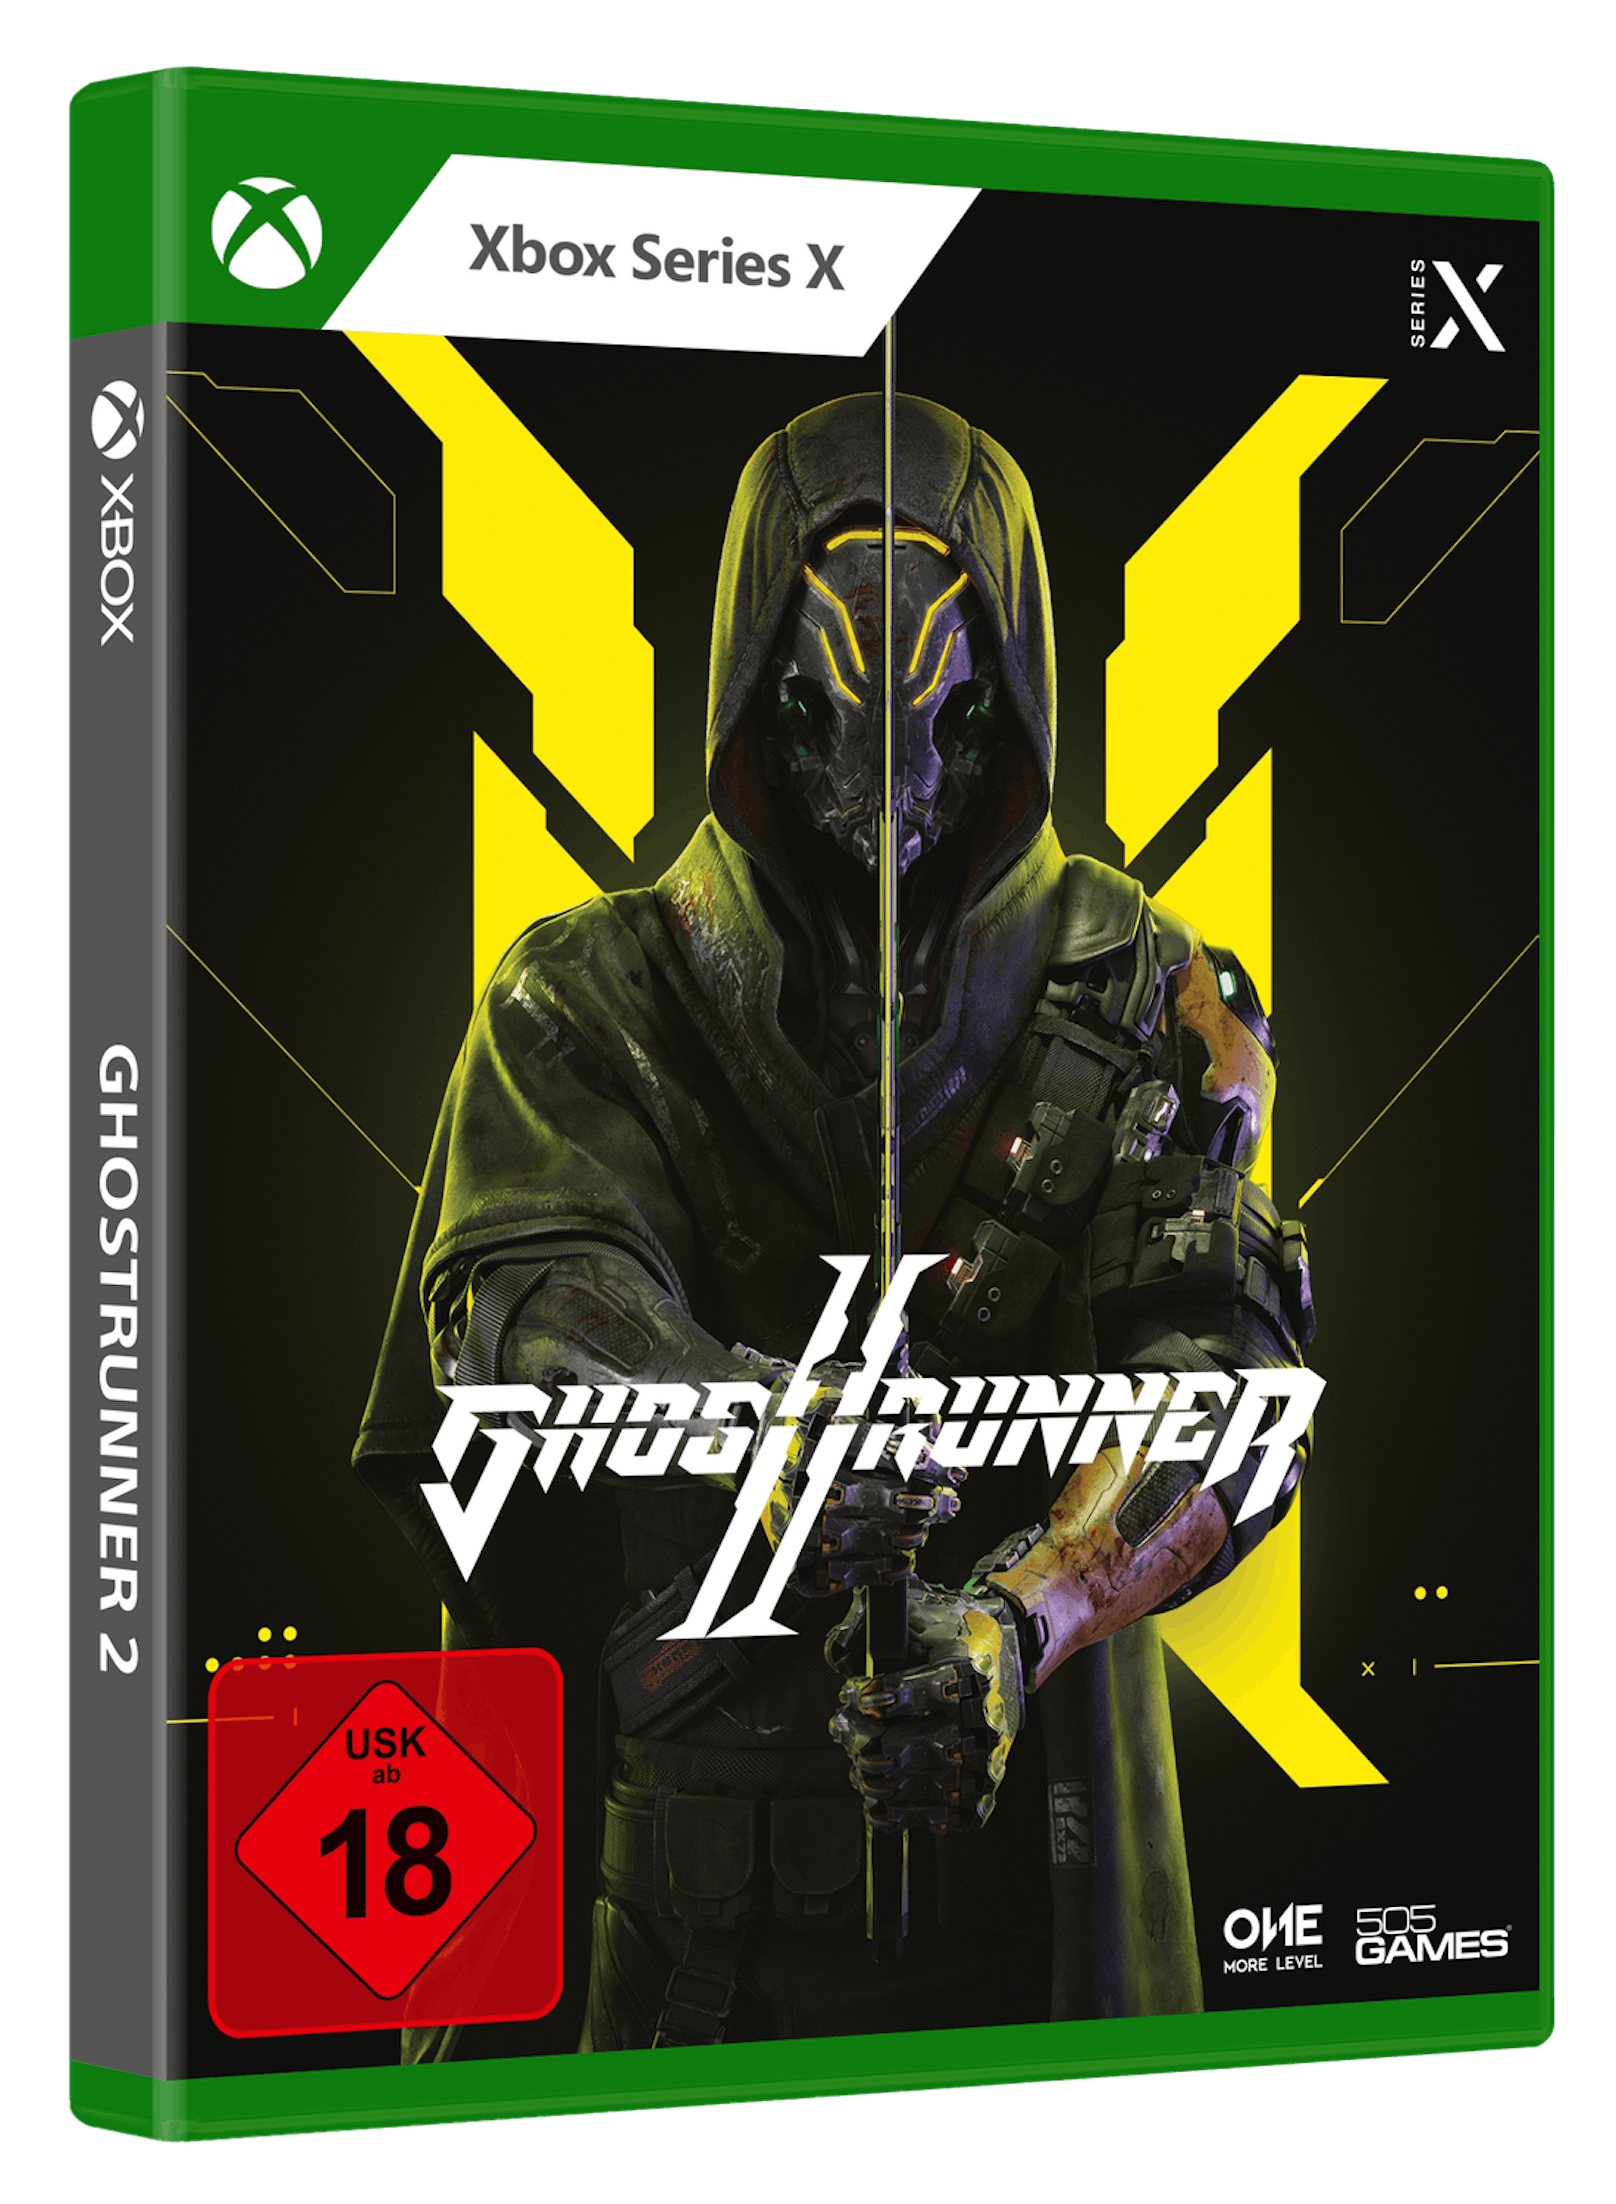 Ghostrunner 2 für Xbox Series X